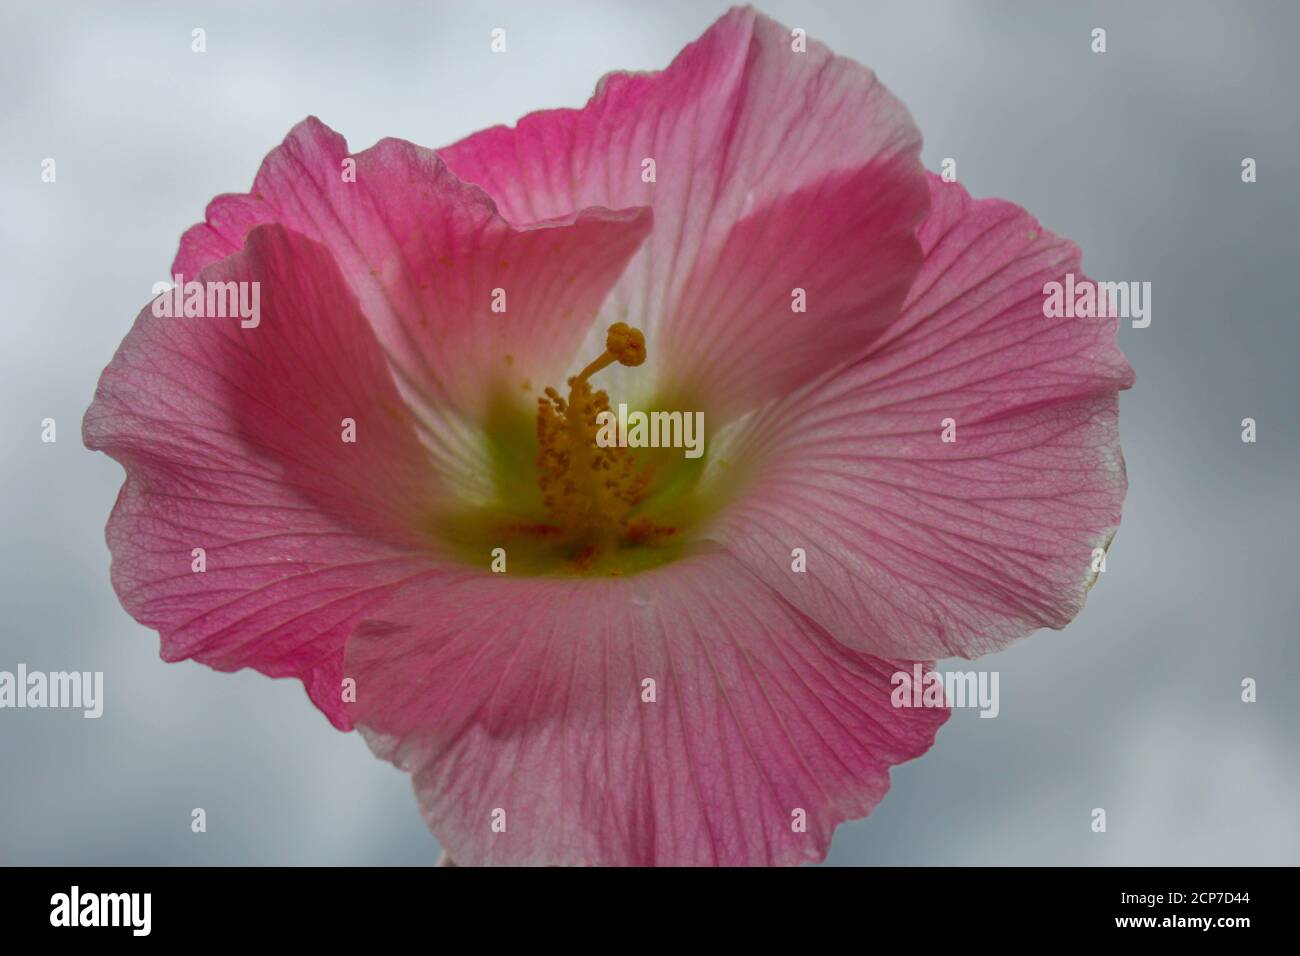 fleur, fleur rose magnifique, fleurs en arrière-plan de l'image du jardin Banque D'Images